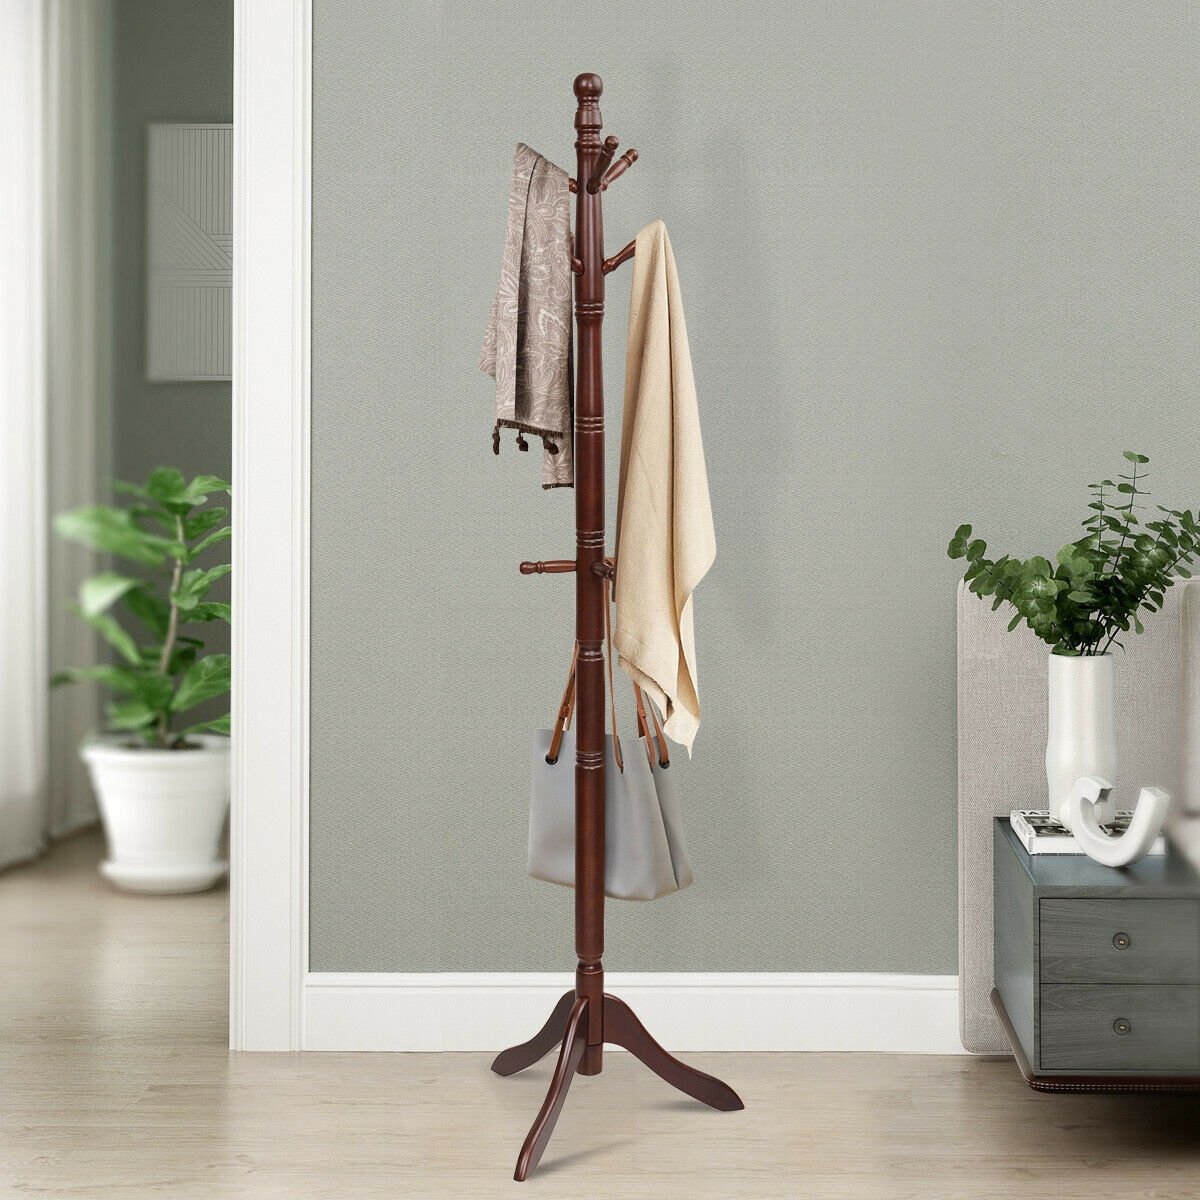 Adjustable Free Standing Wooden Coat Rack, Brown - Gallery Canada